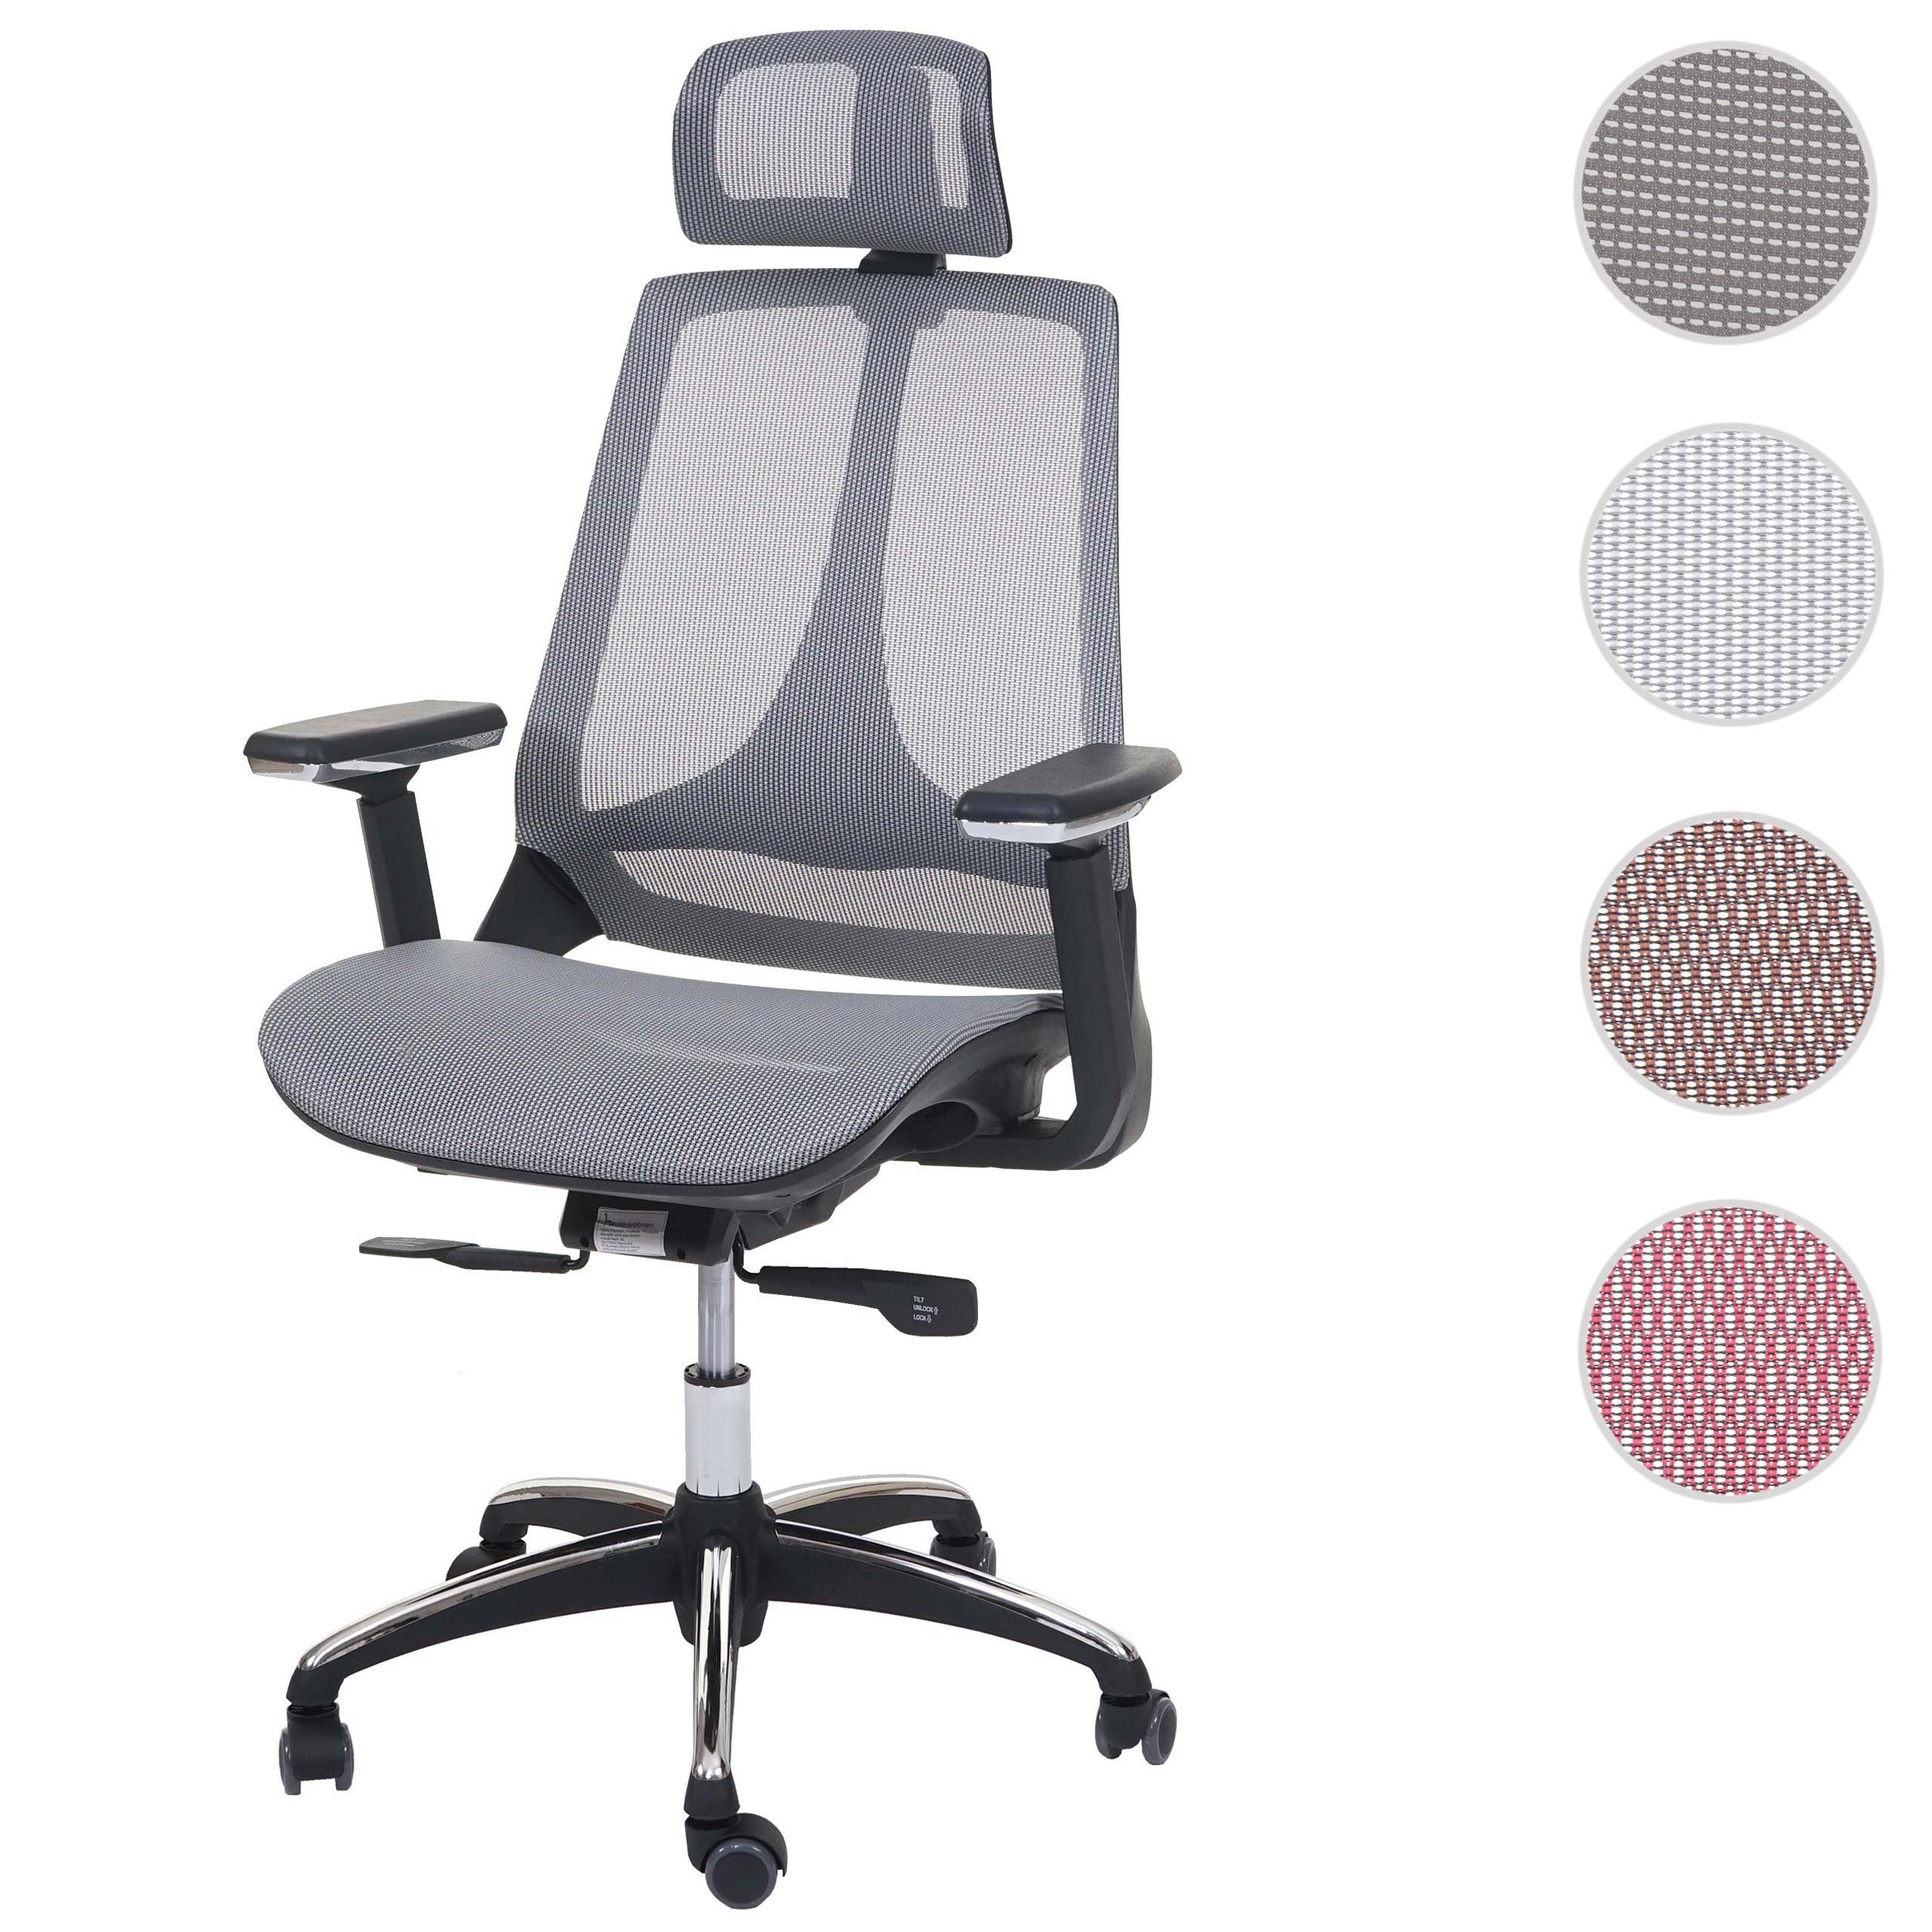 MCW Schreibtischstuhl MCW-A59, Höhenverstellbare Sitzfläche Kopfstütze, tiefenverstellbare grau